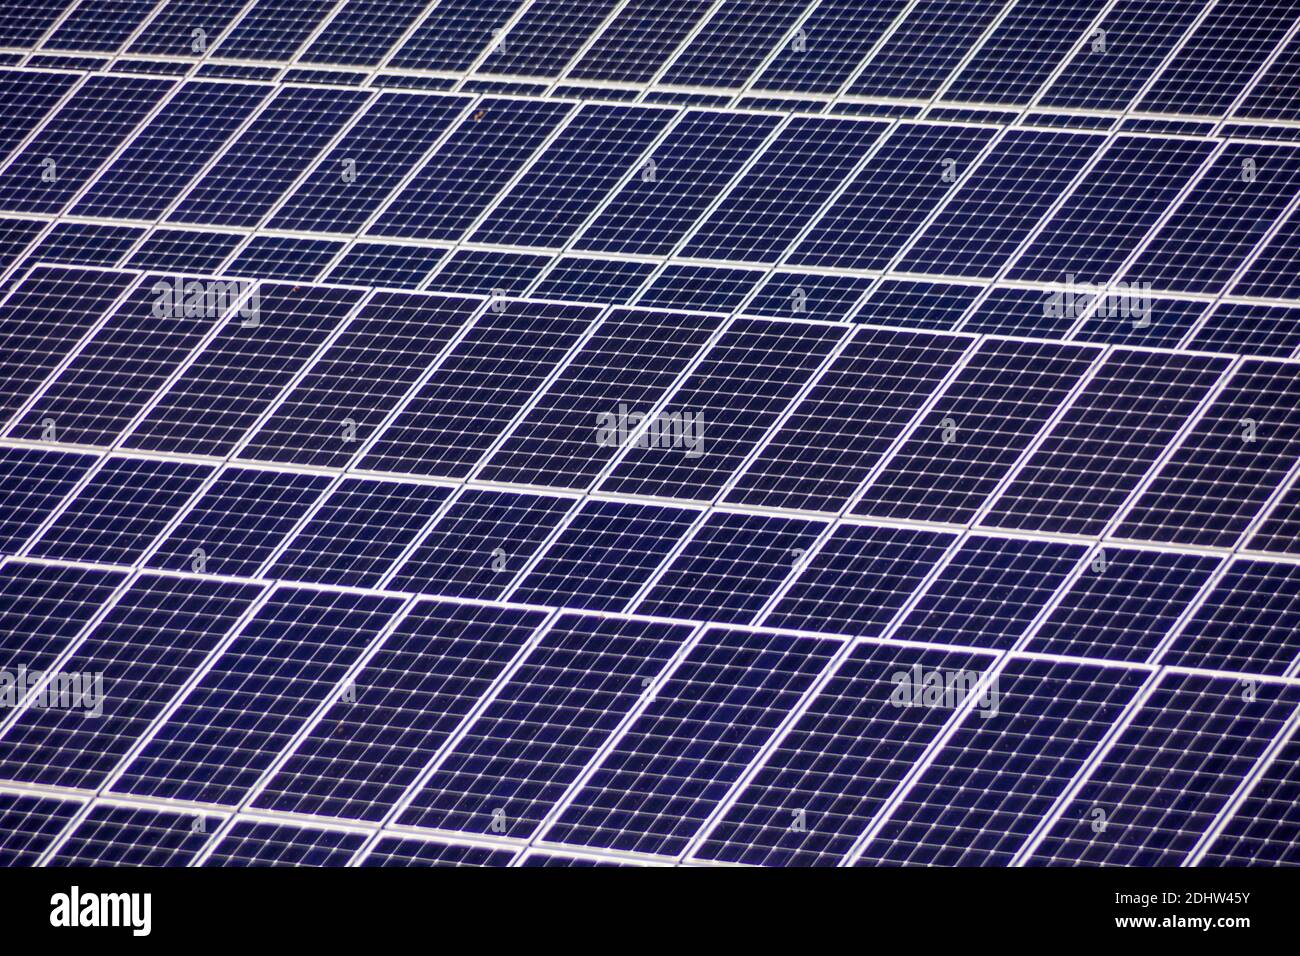 Solarzellen für die Gewinnung von Strom durch die Sonnenenergie von Solarkraftwerkes. Alternative und umweltfreundliche Energie aus Sonnenkraft Banque D'Images